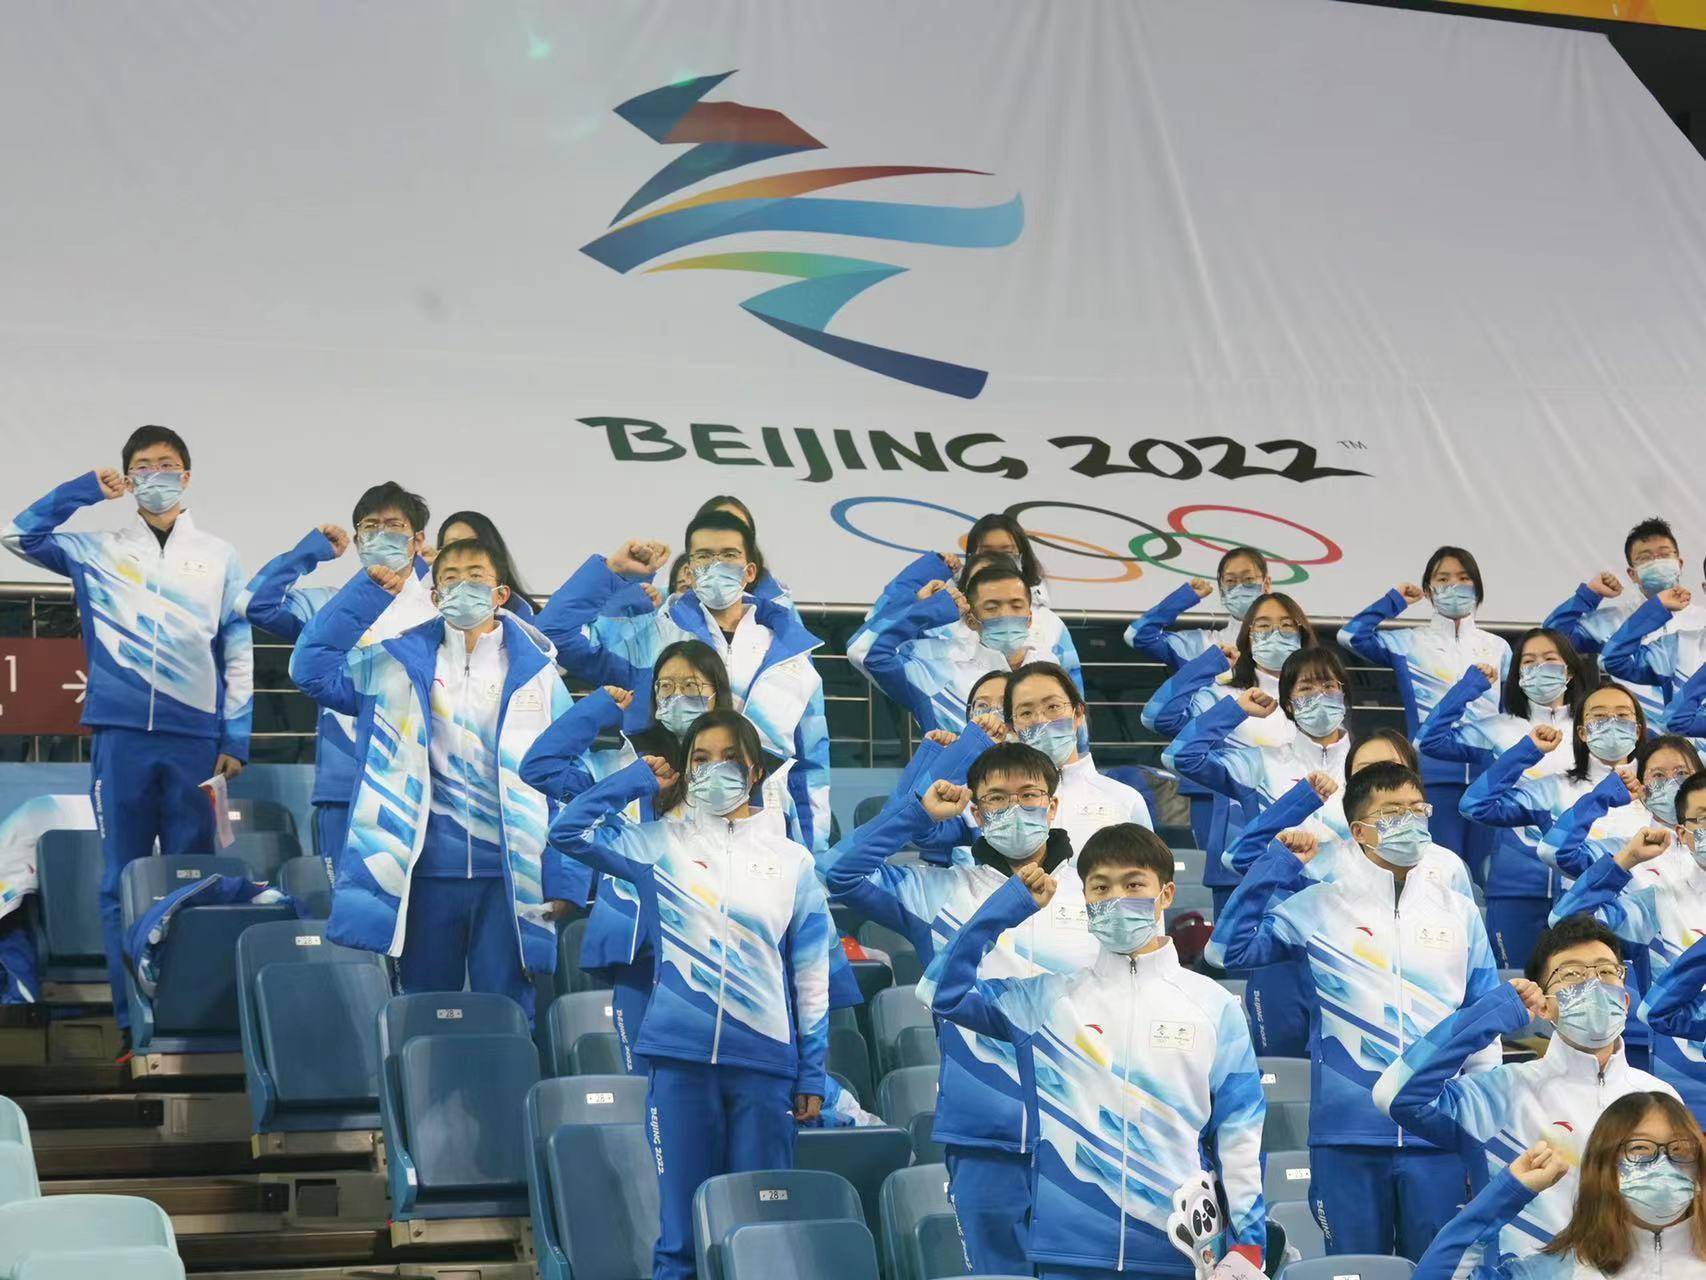 北京2球王会022年冬奥会和冬残奥会志愿者标志正式发布(图)
